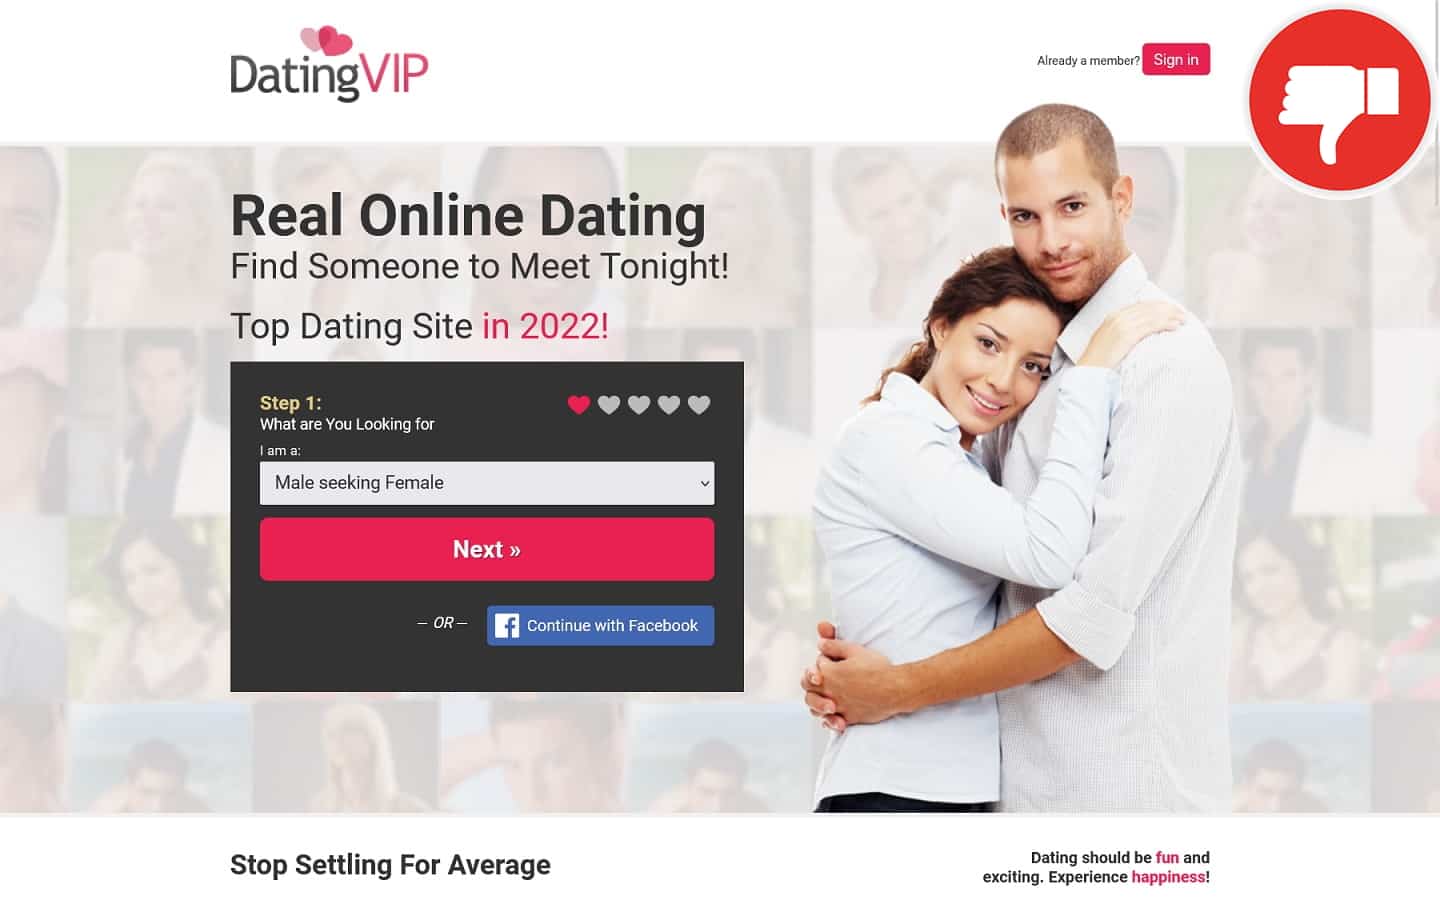 Review DatingVIP.com scam experience